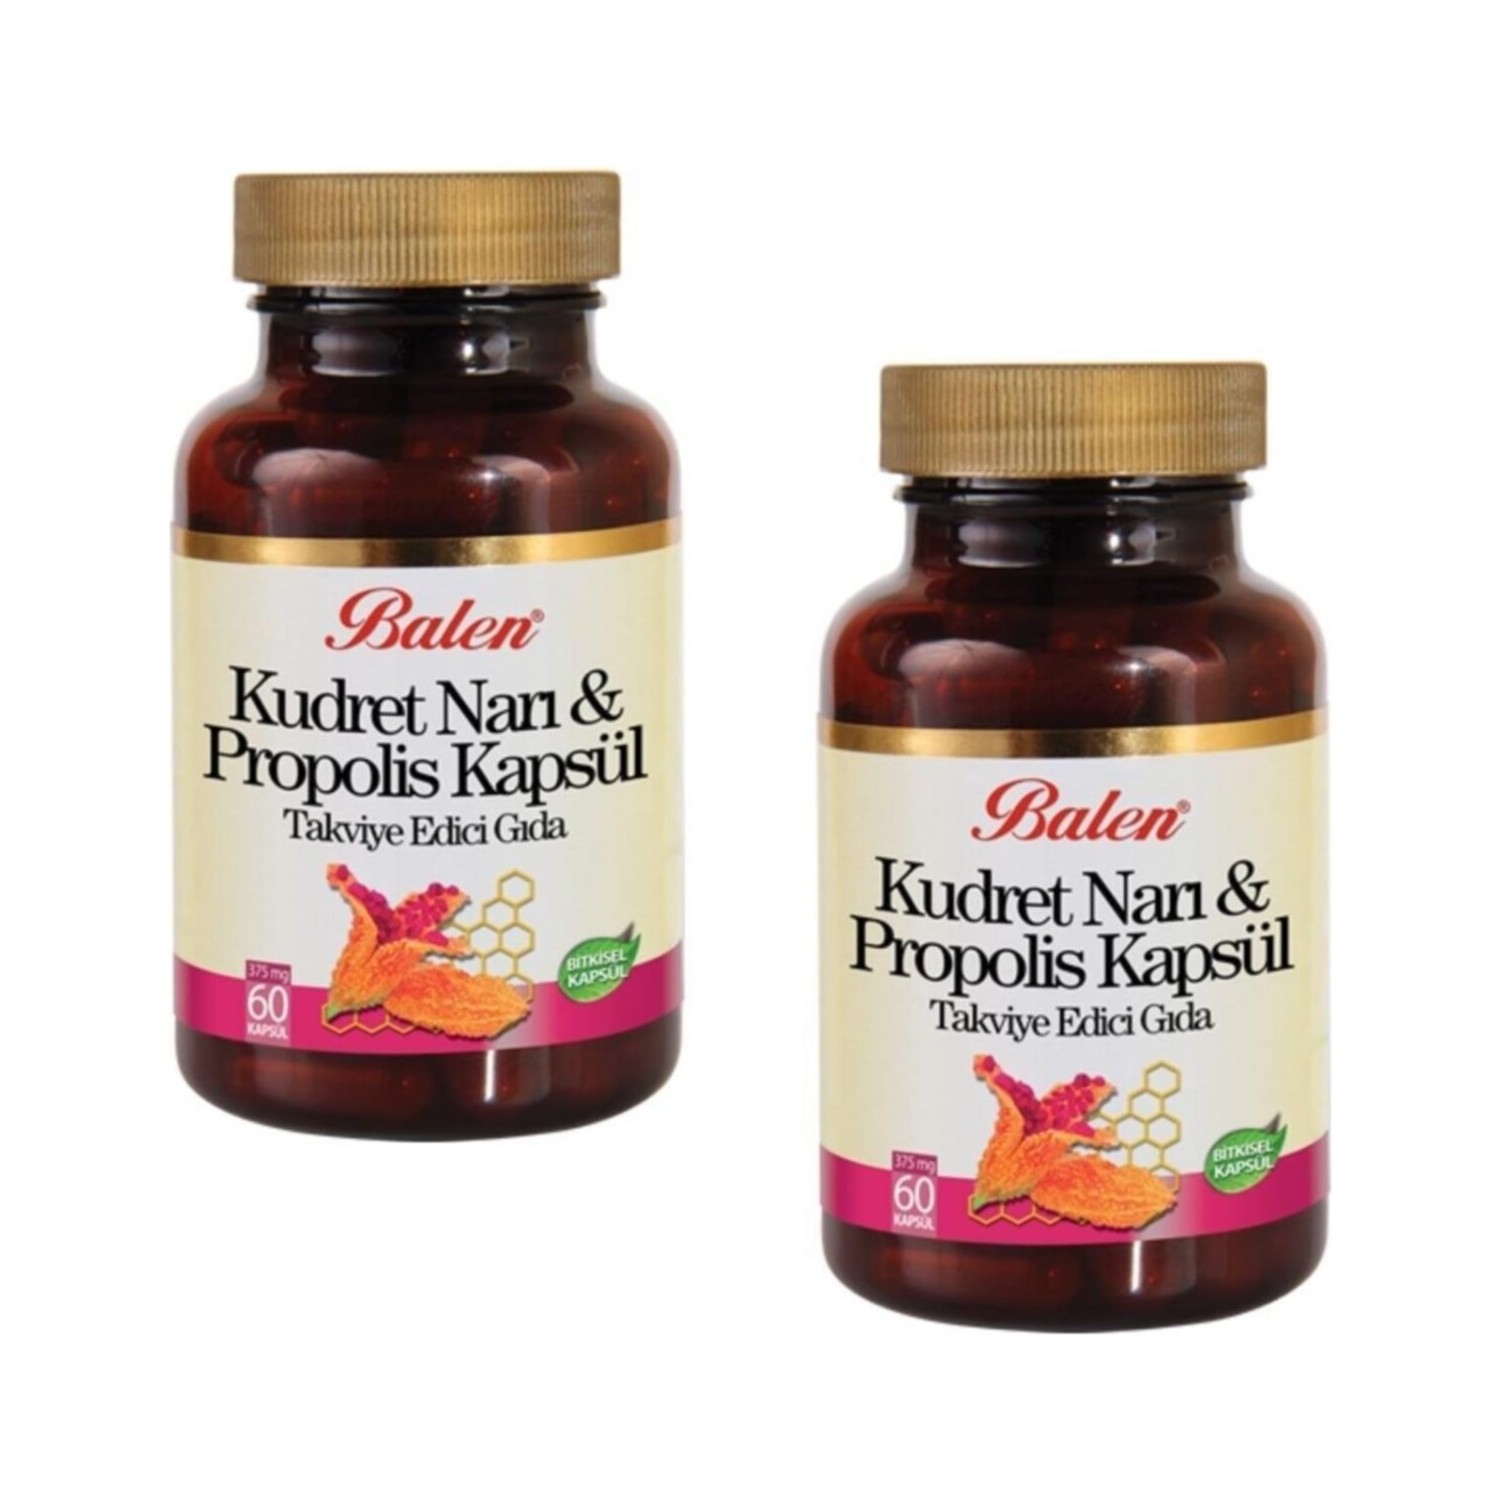 Активная добавка Balen Kudret Nari Capsule, 60 капсул, 300 мг, 2 штуки цена и фото